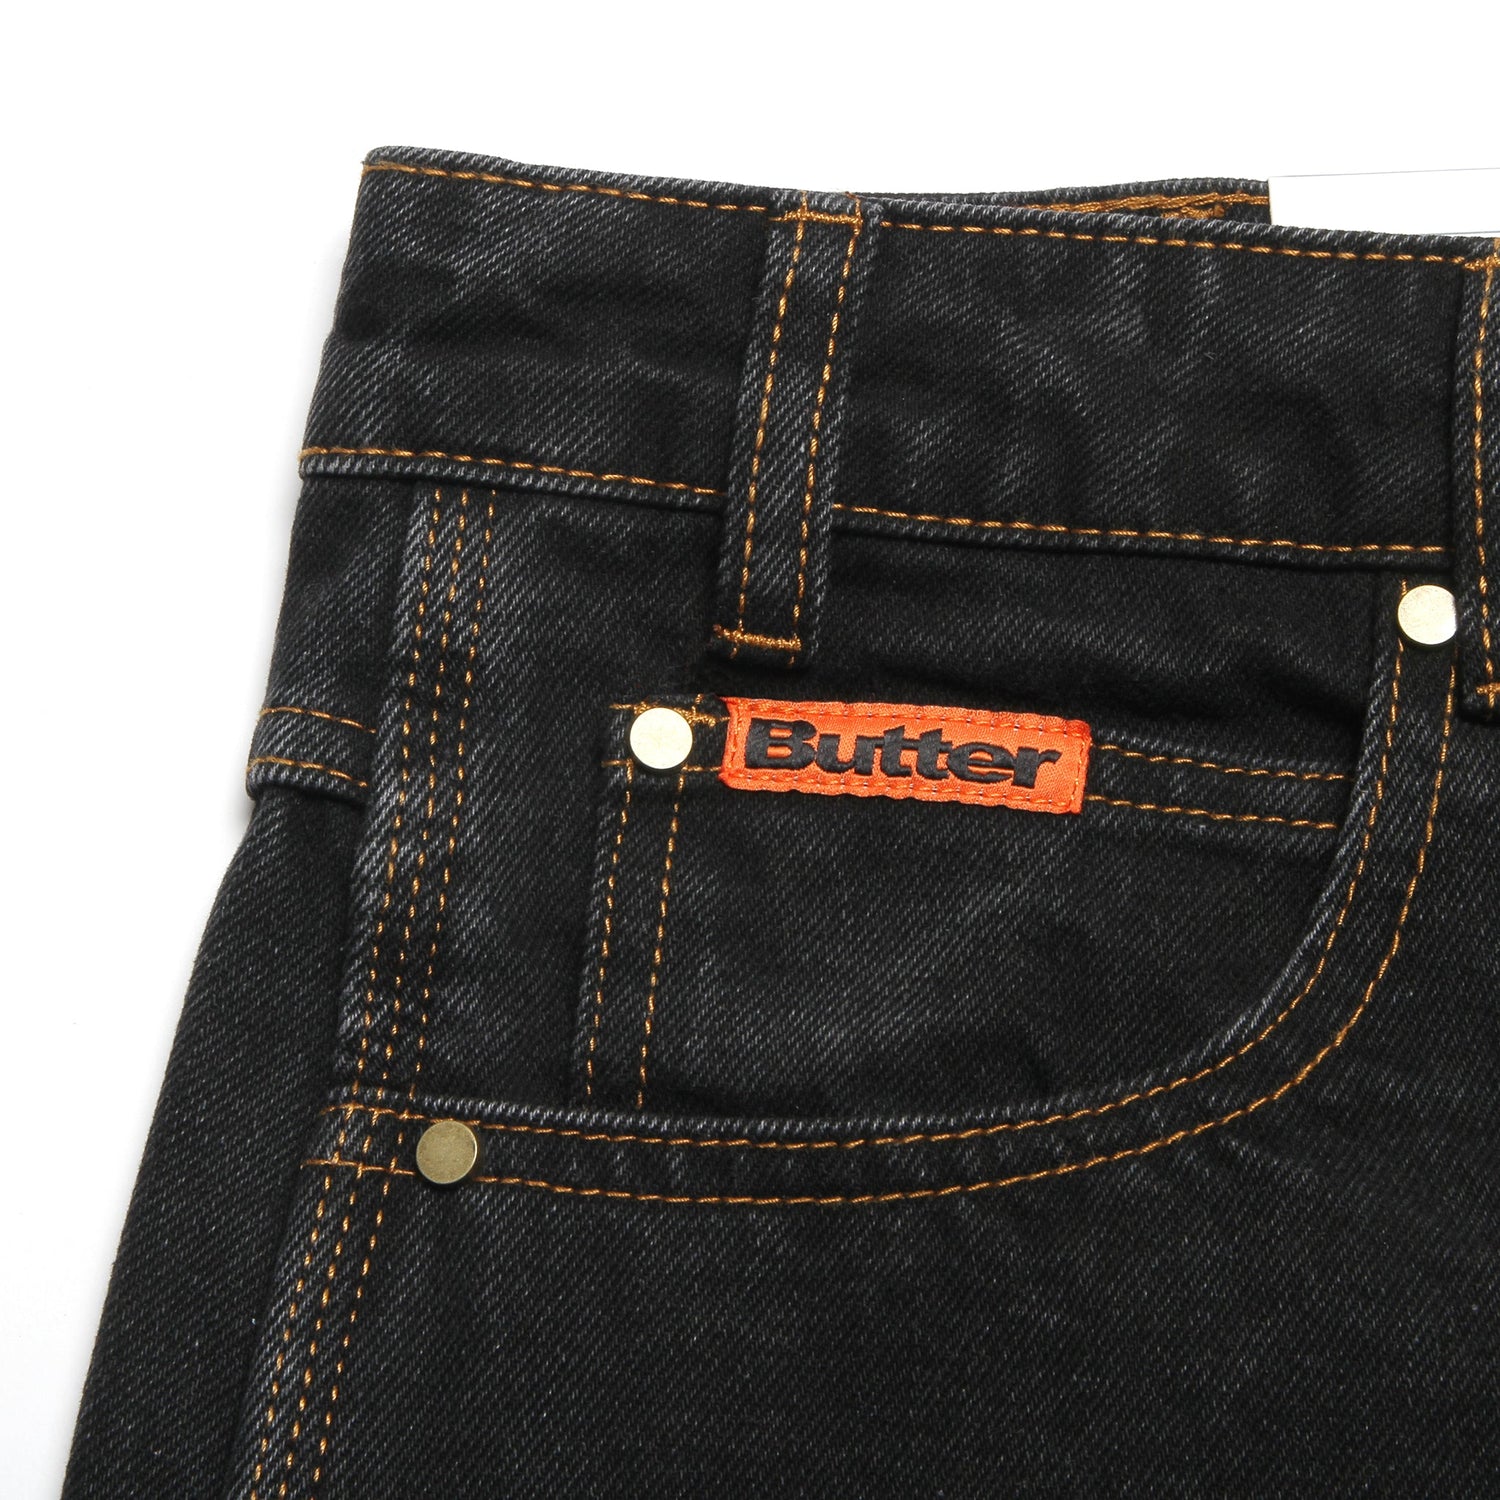 Butter Goods | Baggy Denim Shorts Color : Washed Black